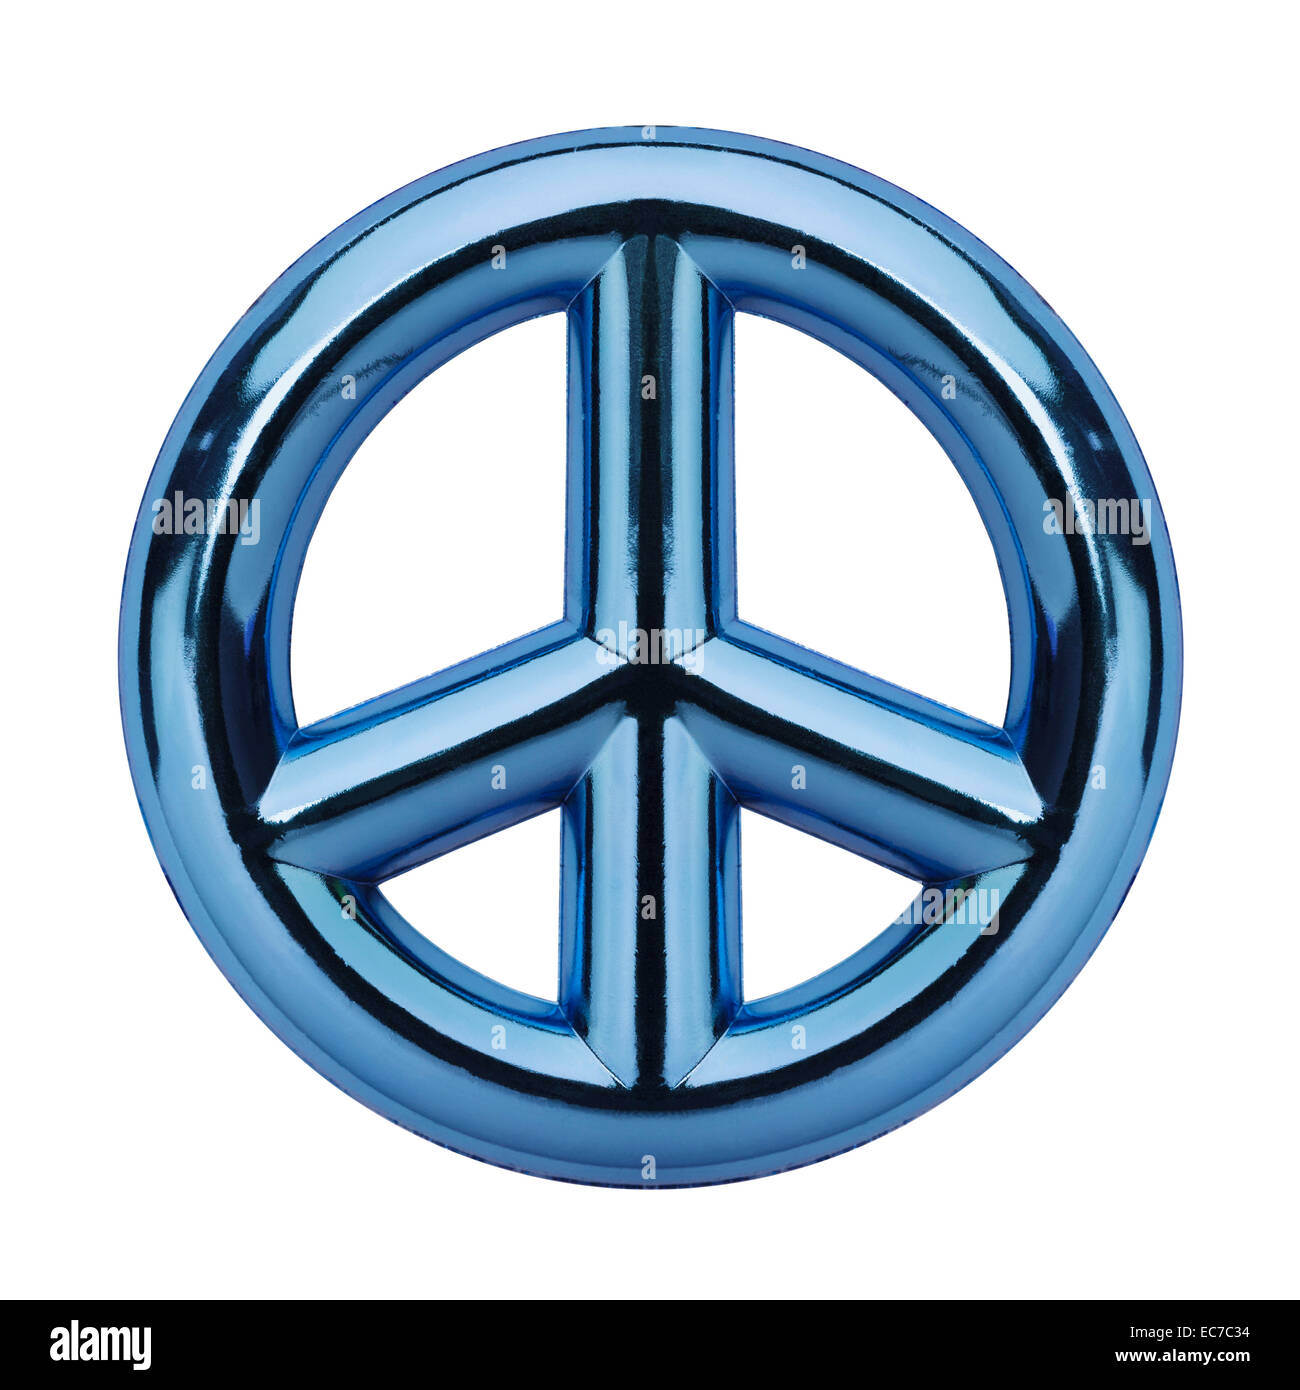 Metallic Blue Peace Symbol Isolated on White Background. Stock Photo